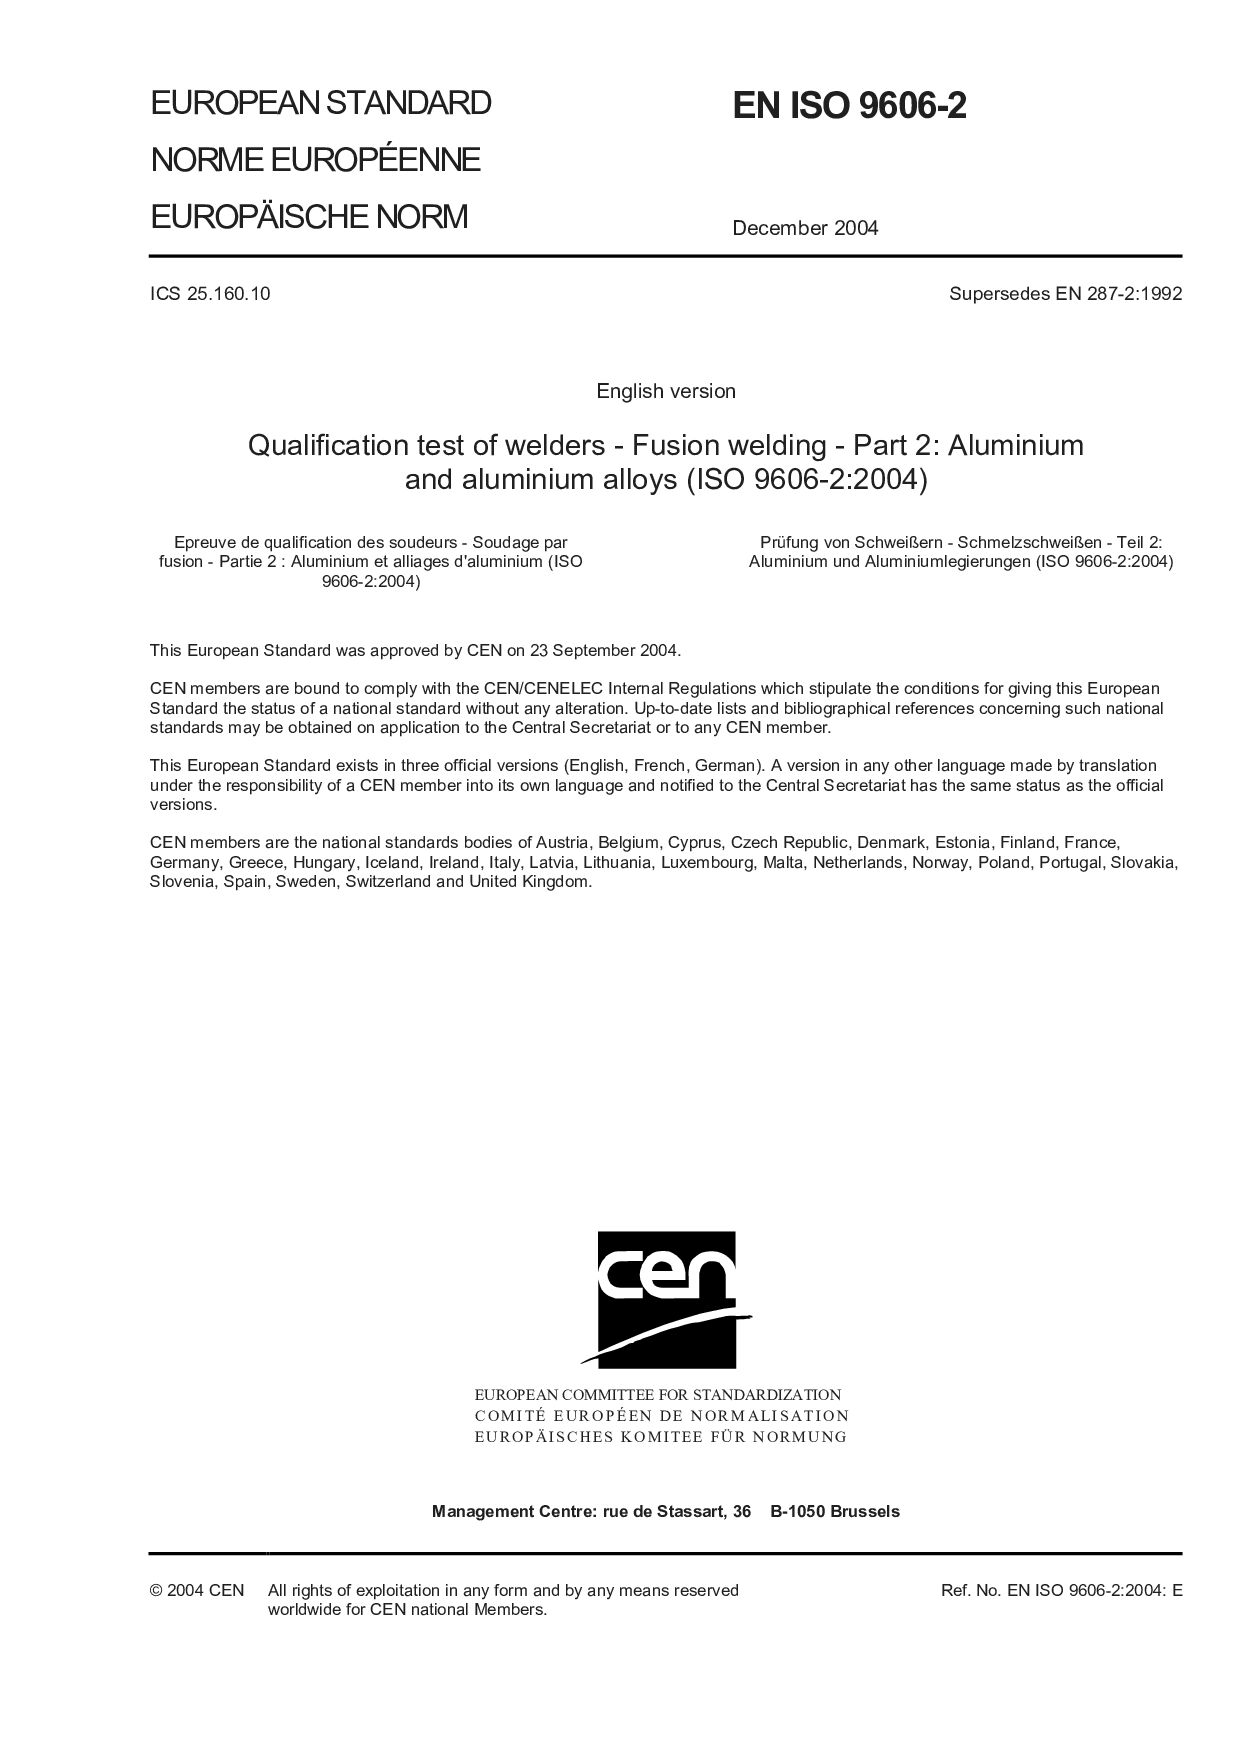 EN ISO 9606-2:2004封面图